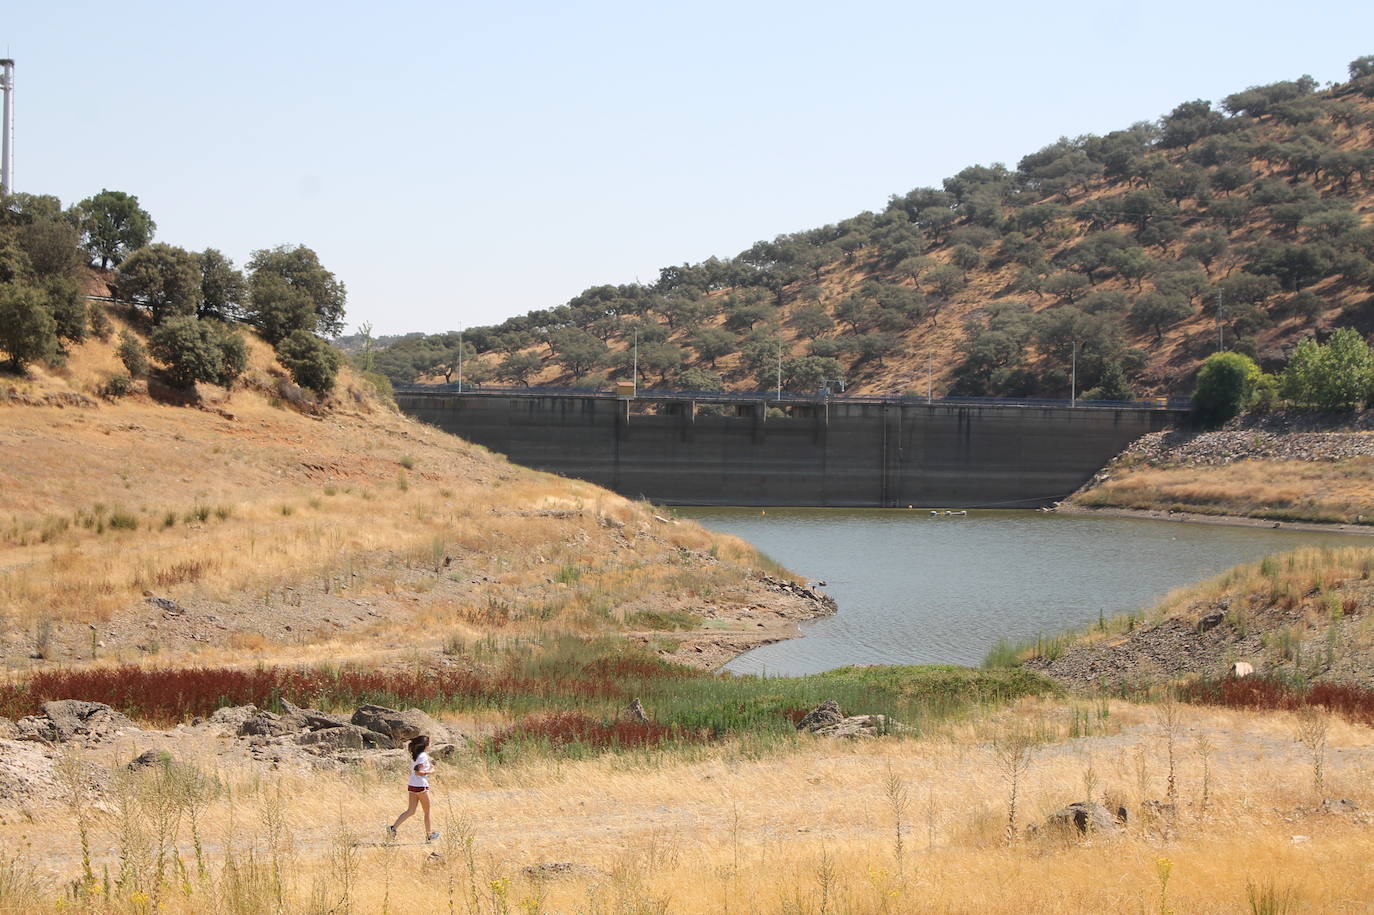 Sale a licitación la redacción del proyecto para la mejora de abastecimientos de agua en Centro-Sur de Badajoz 